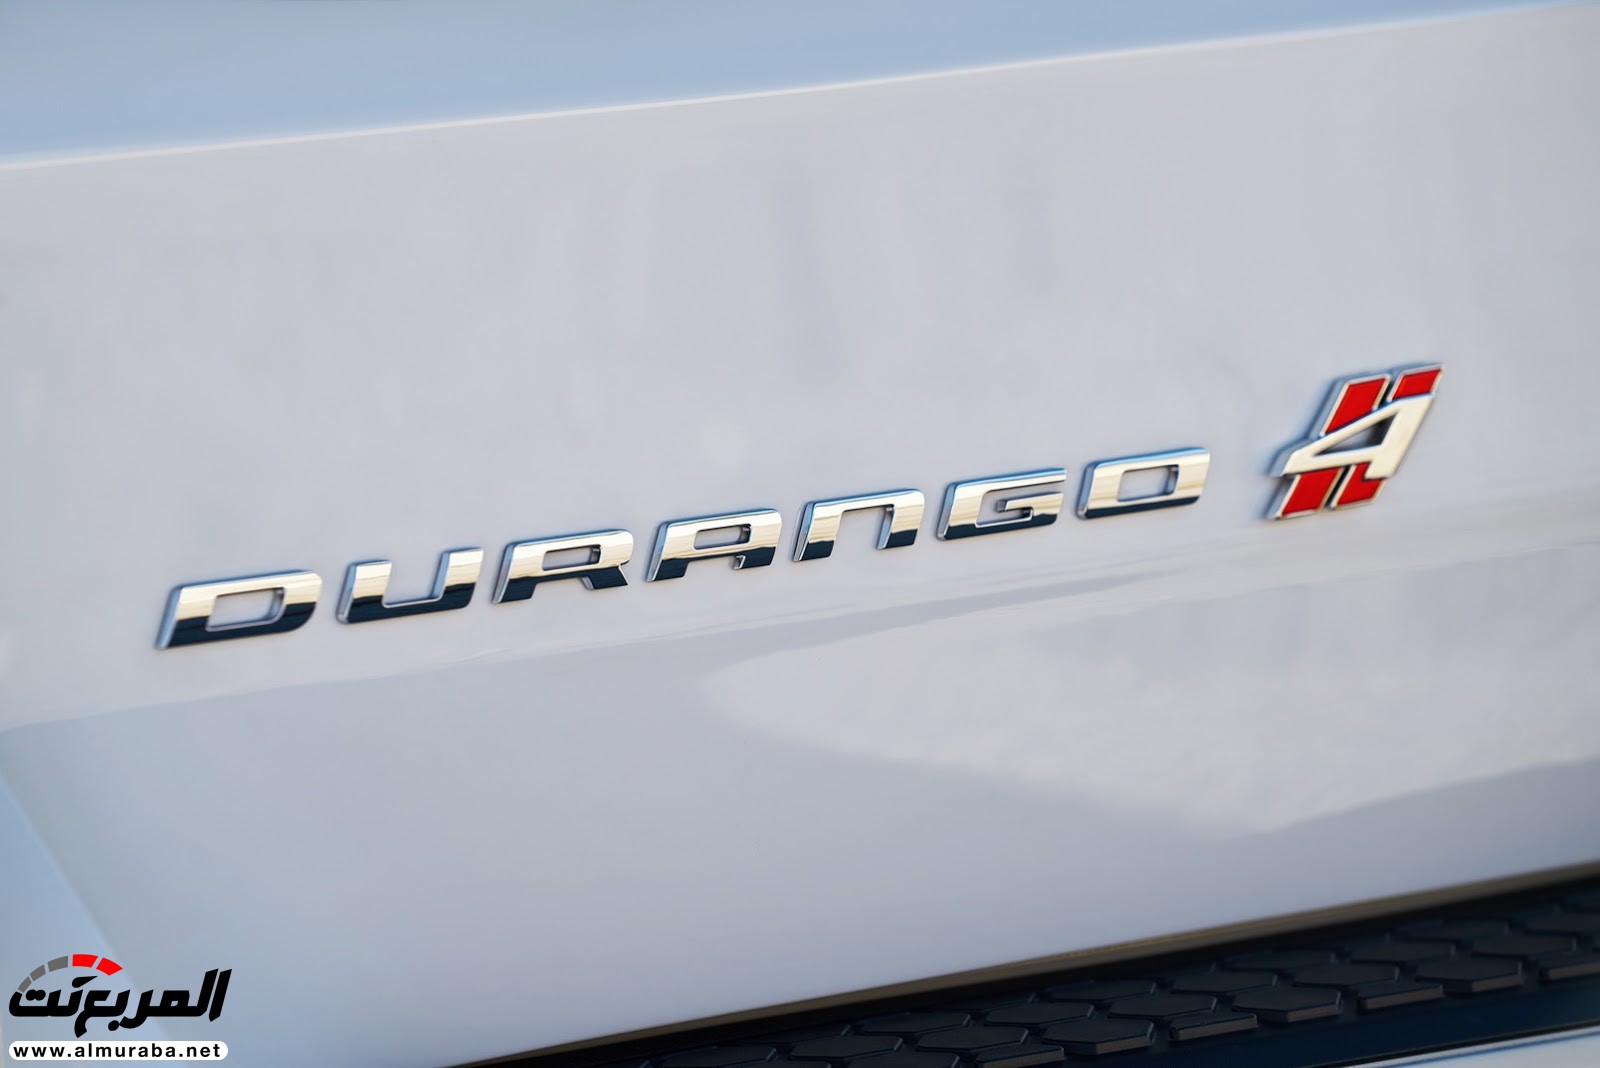 "دودج" دورانجو إس آر تي الجديدة كليا 2018 يكشف عنها بمحرك 475 حصان Dodge Durango SRT 170